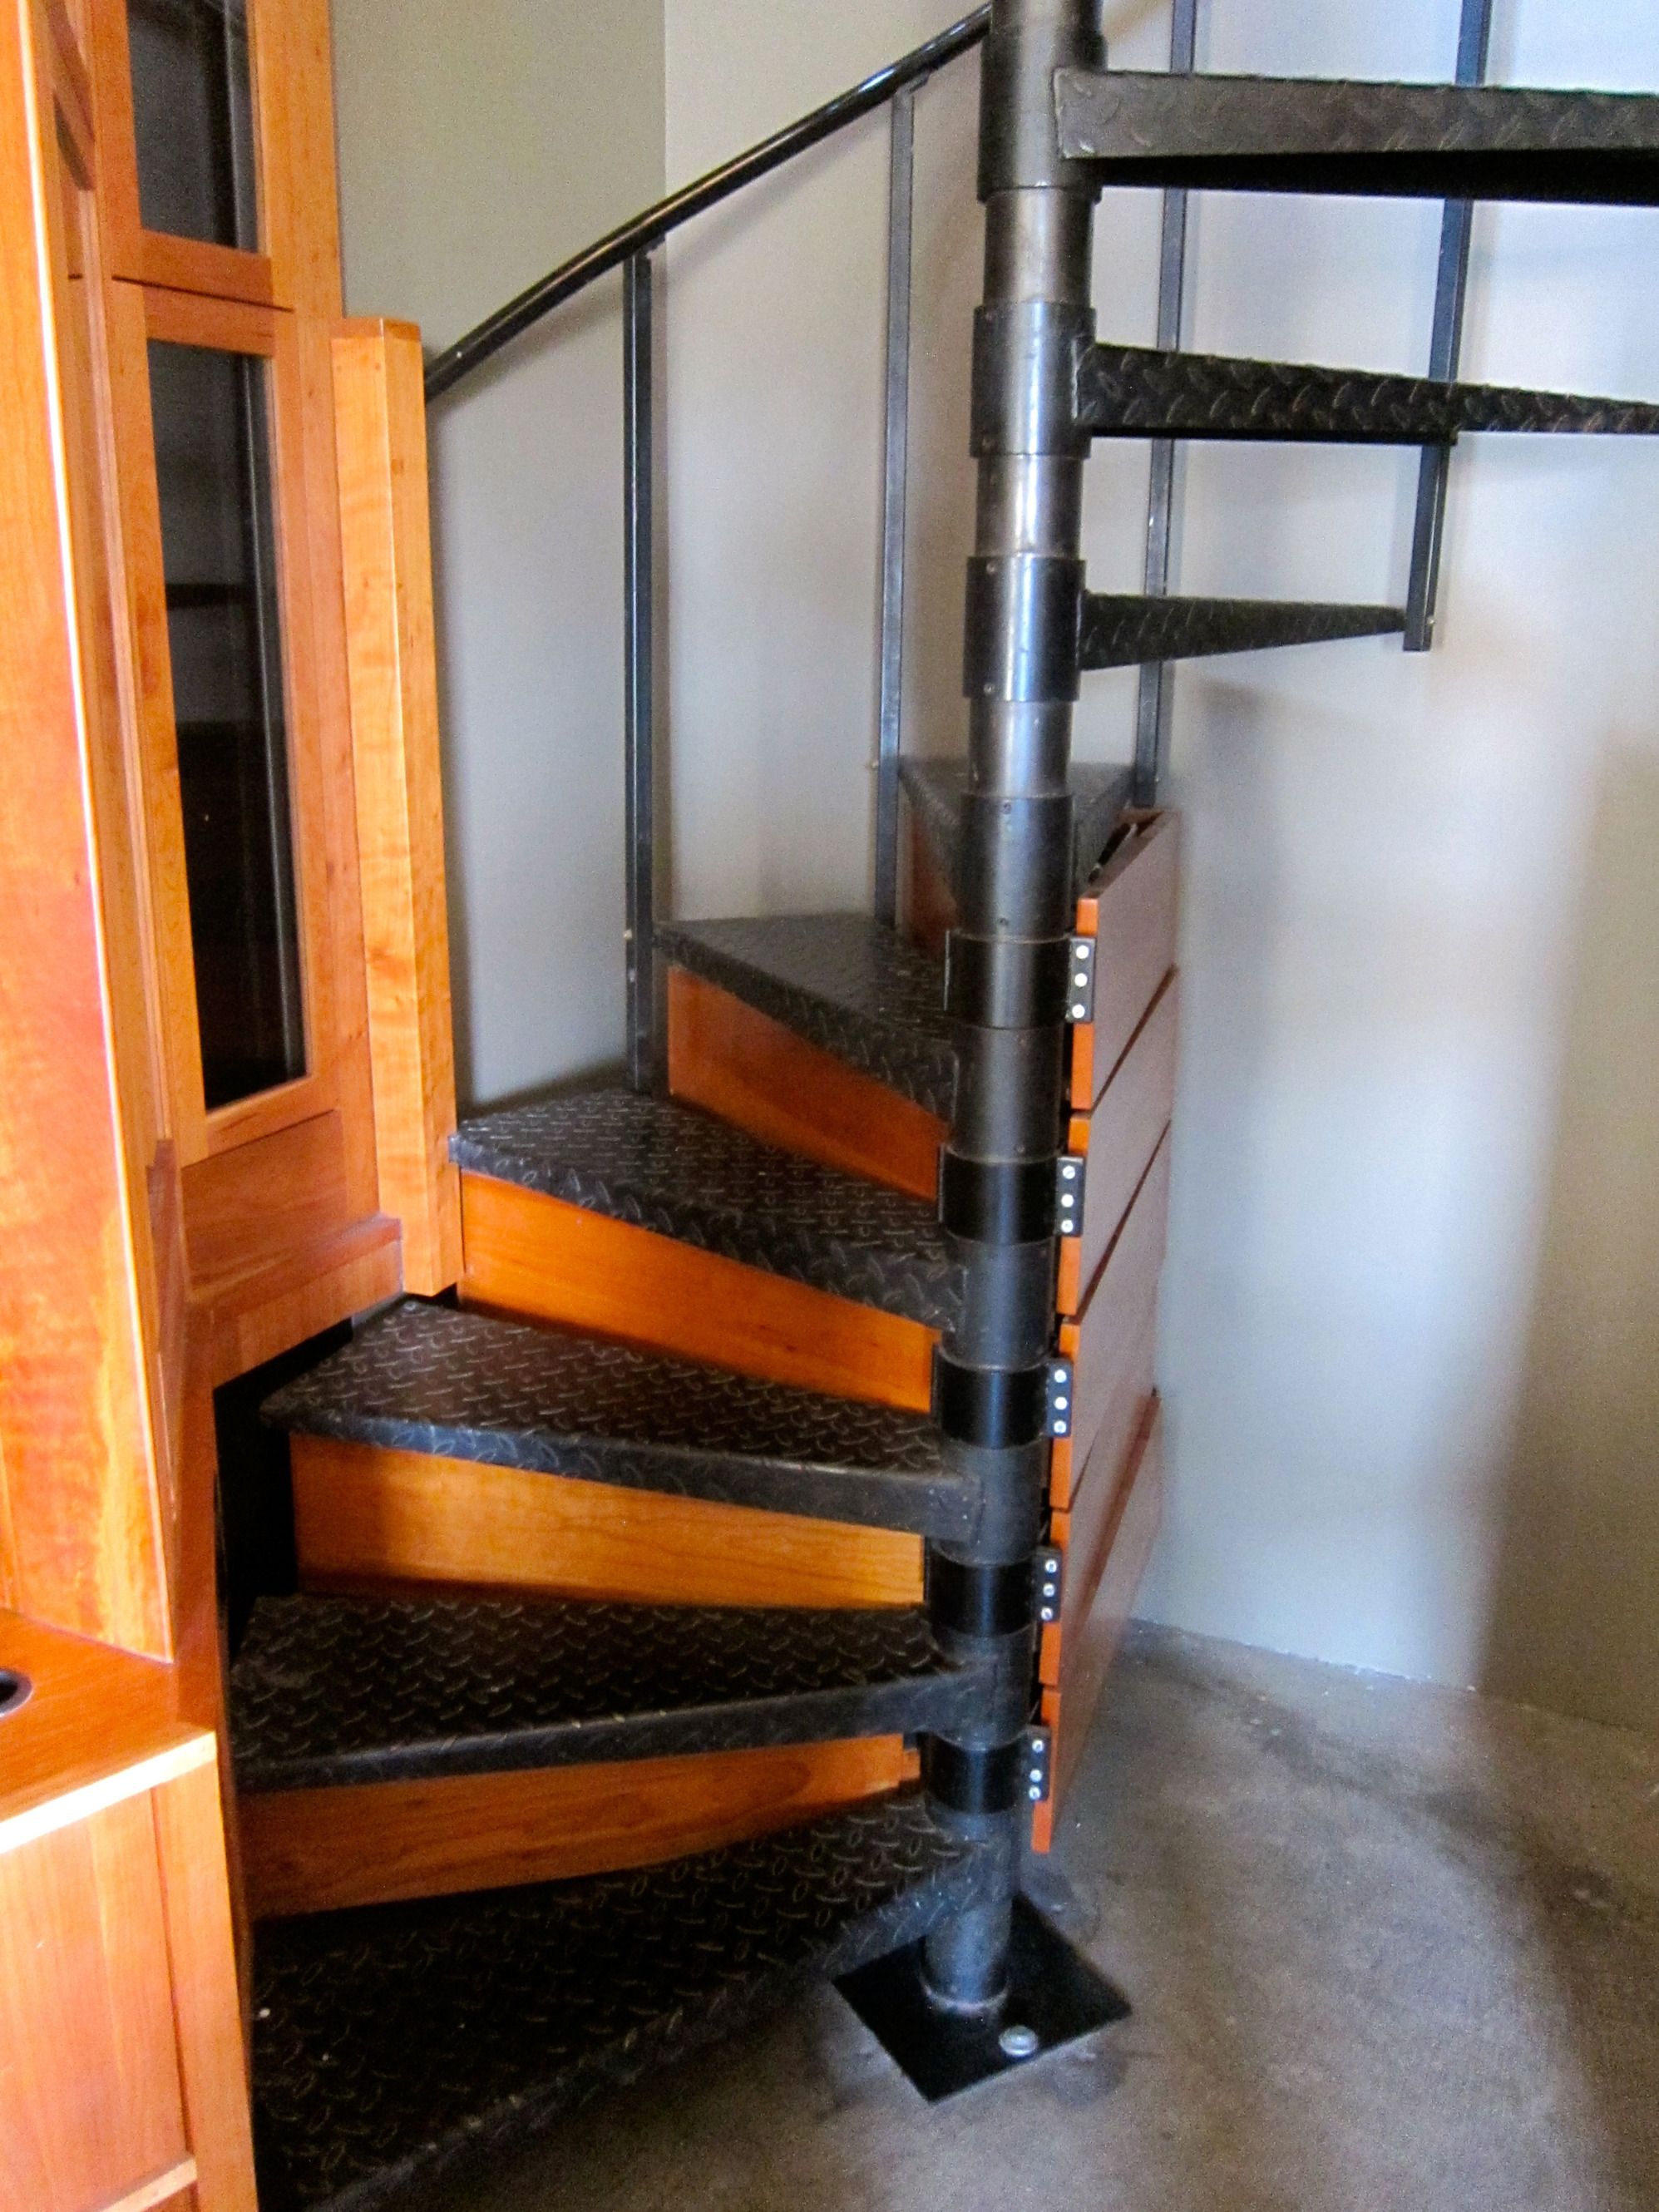 storage in spiral staircase | interior inspiration | Pinterest ...